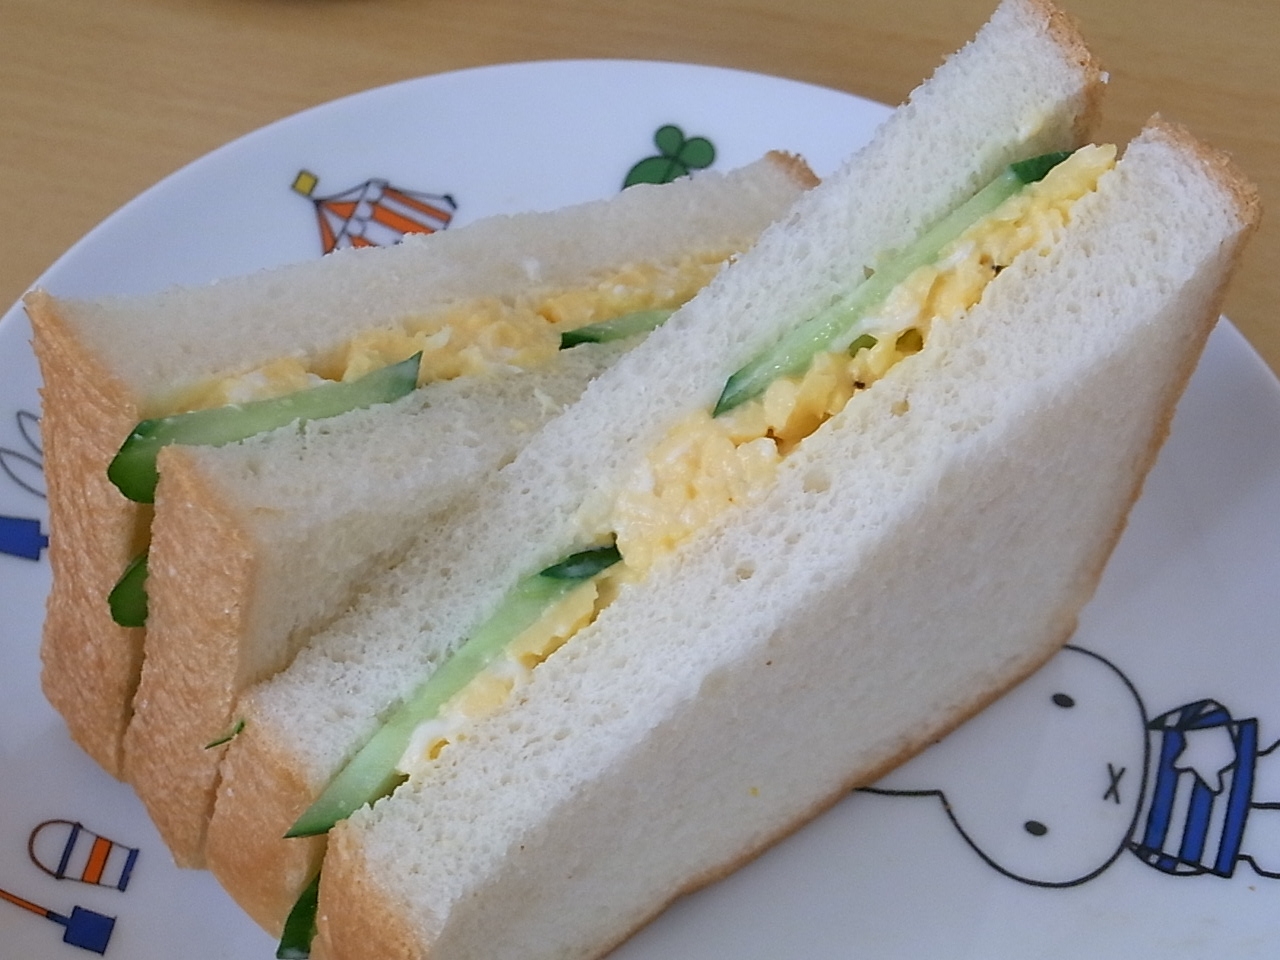 炒り卵ときゅうりのお手軽サンドイッチ